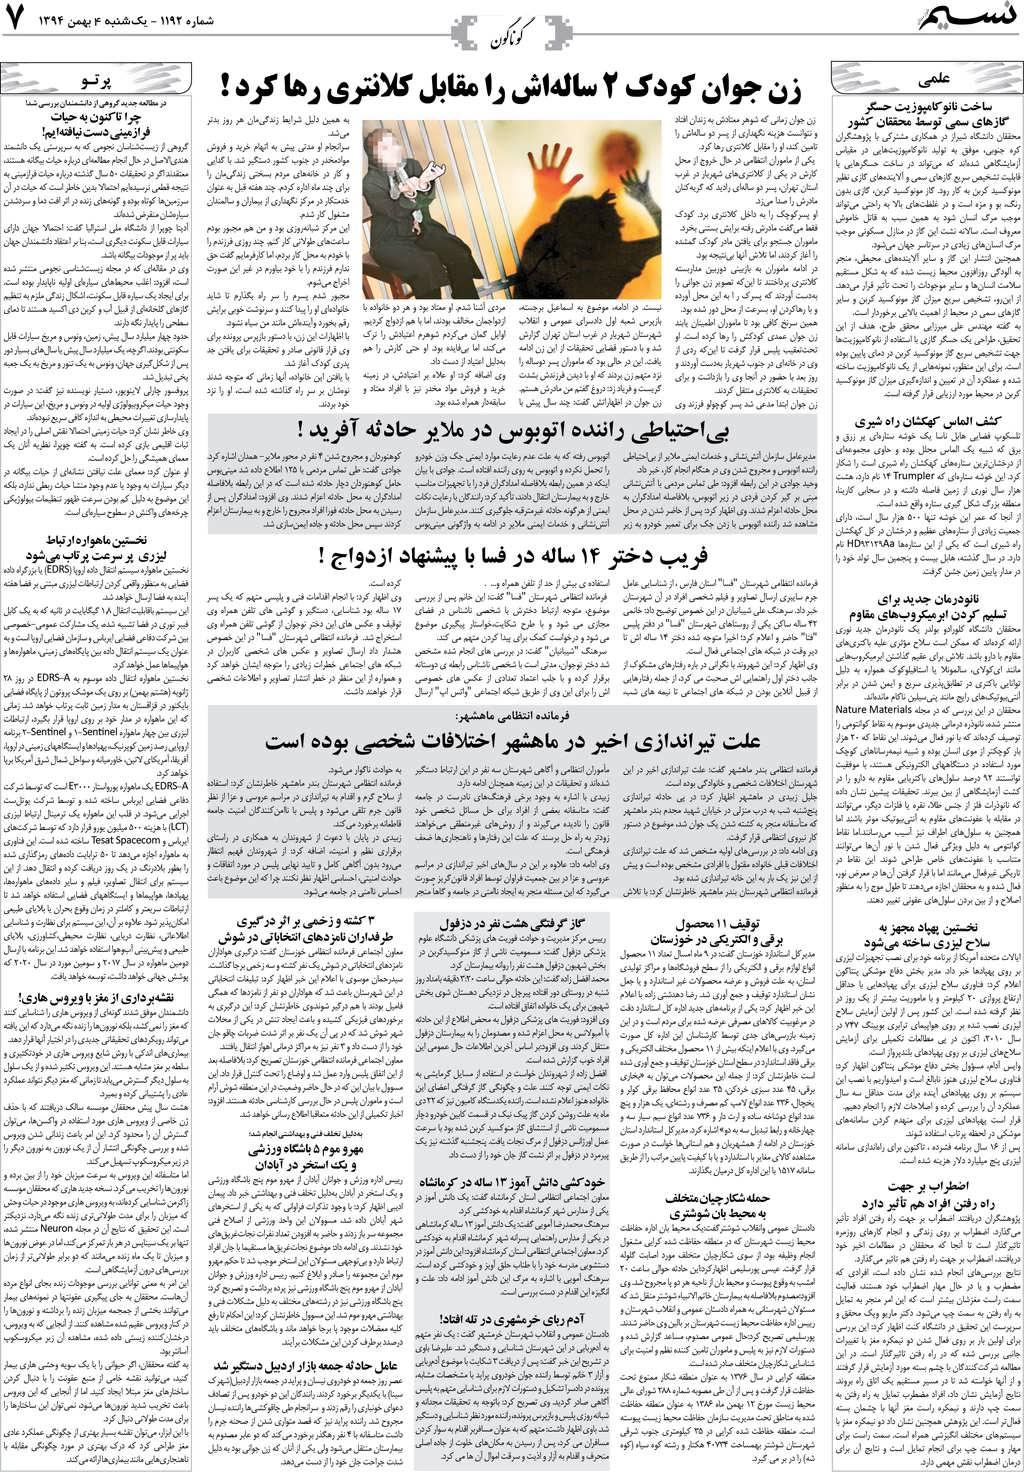 صفحه گوناگون روزنامه نسیم شماره 1192